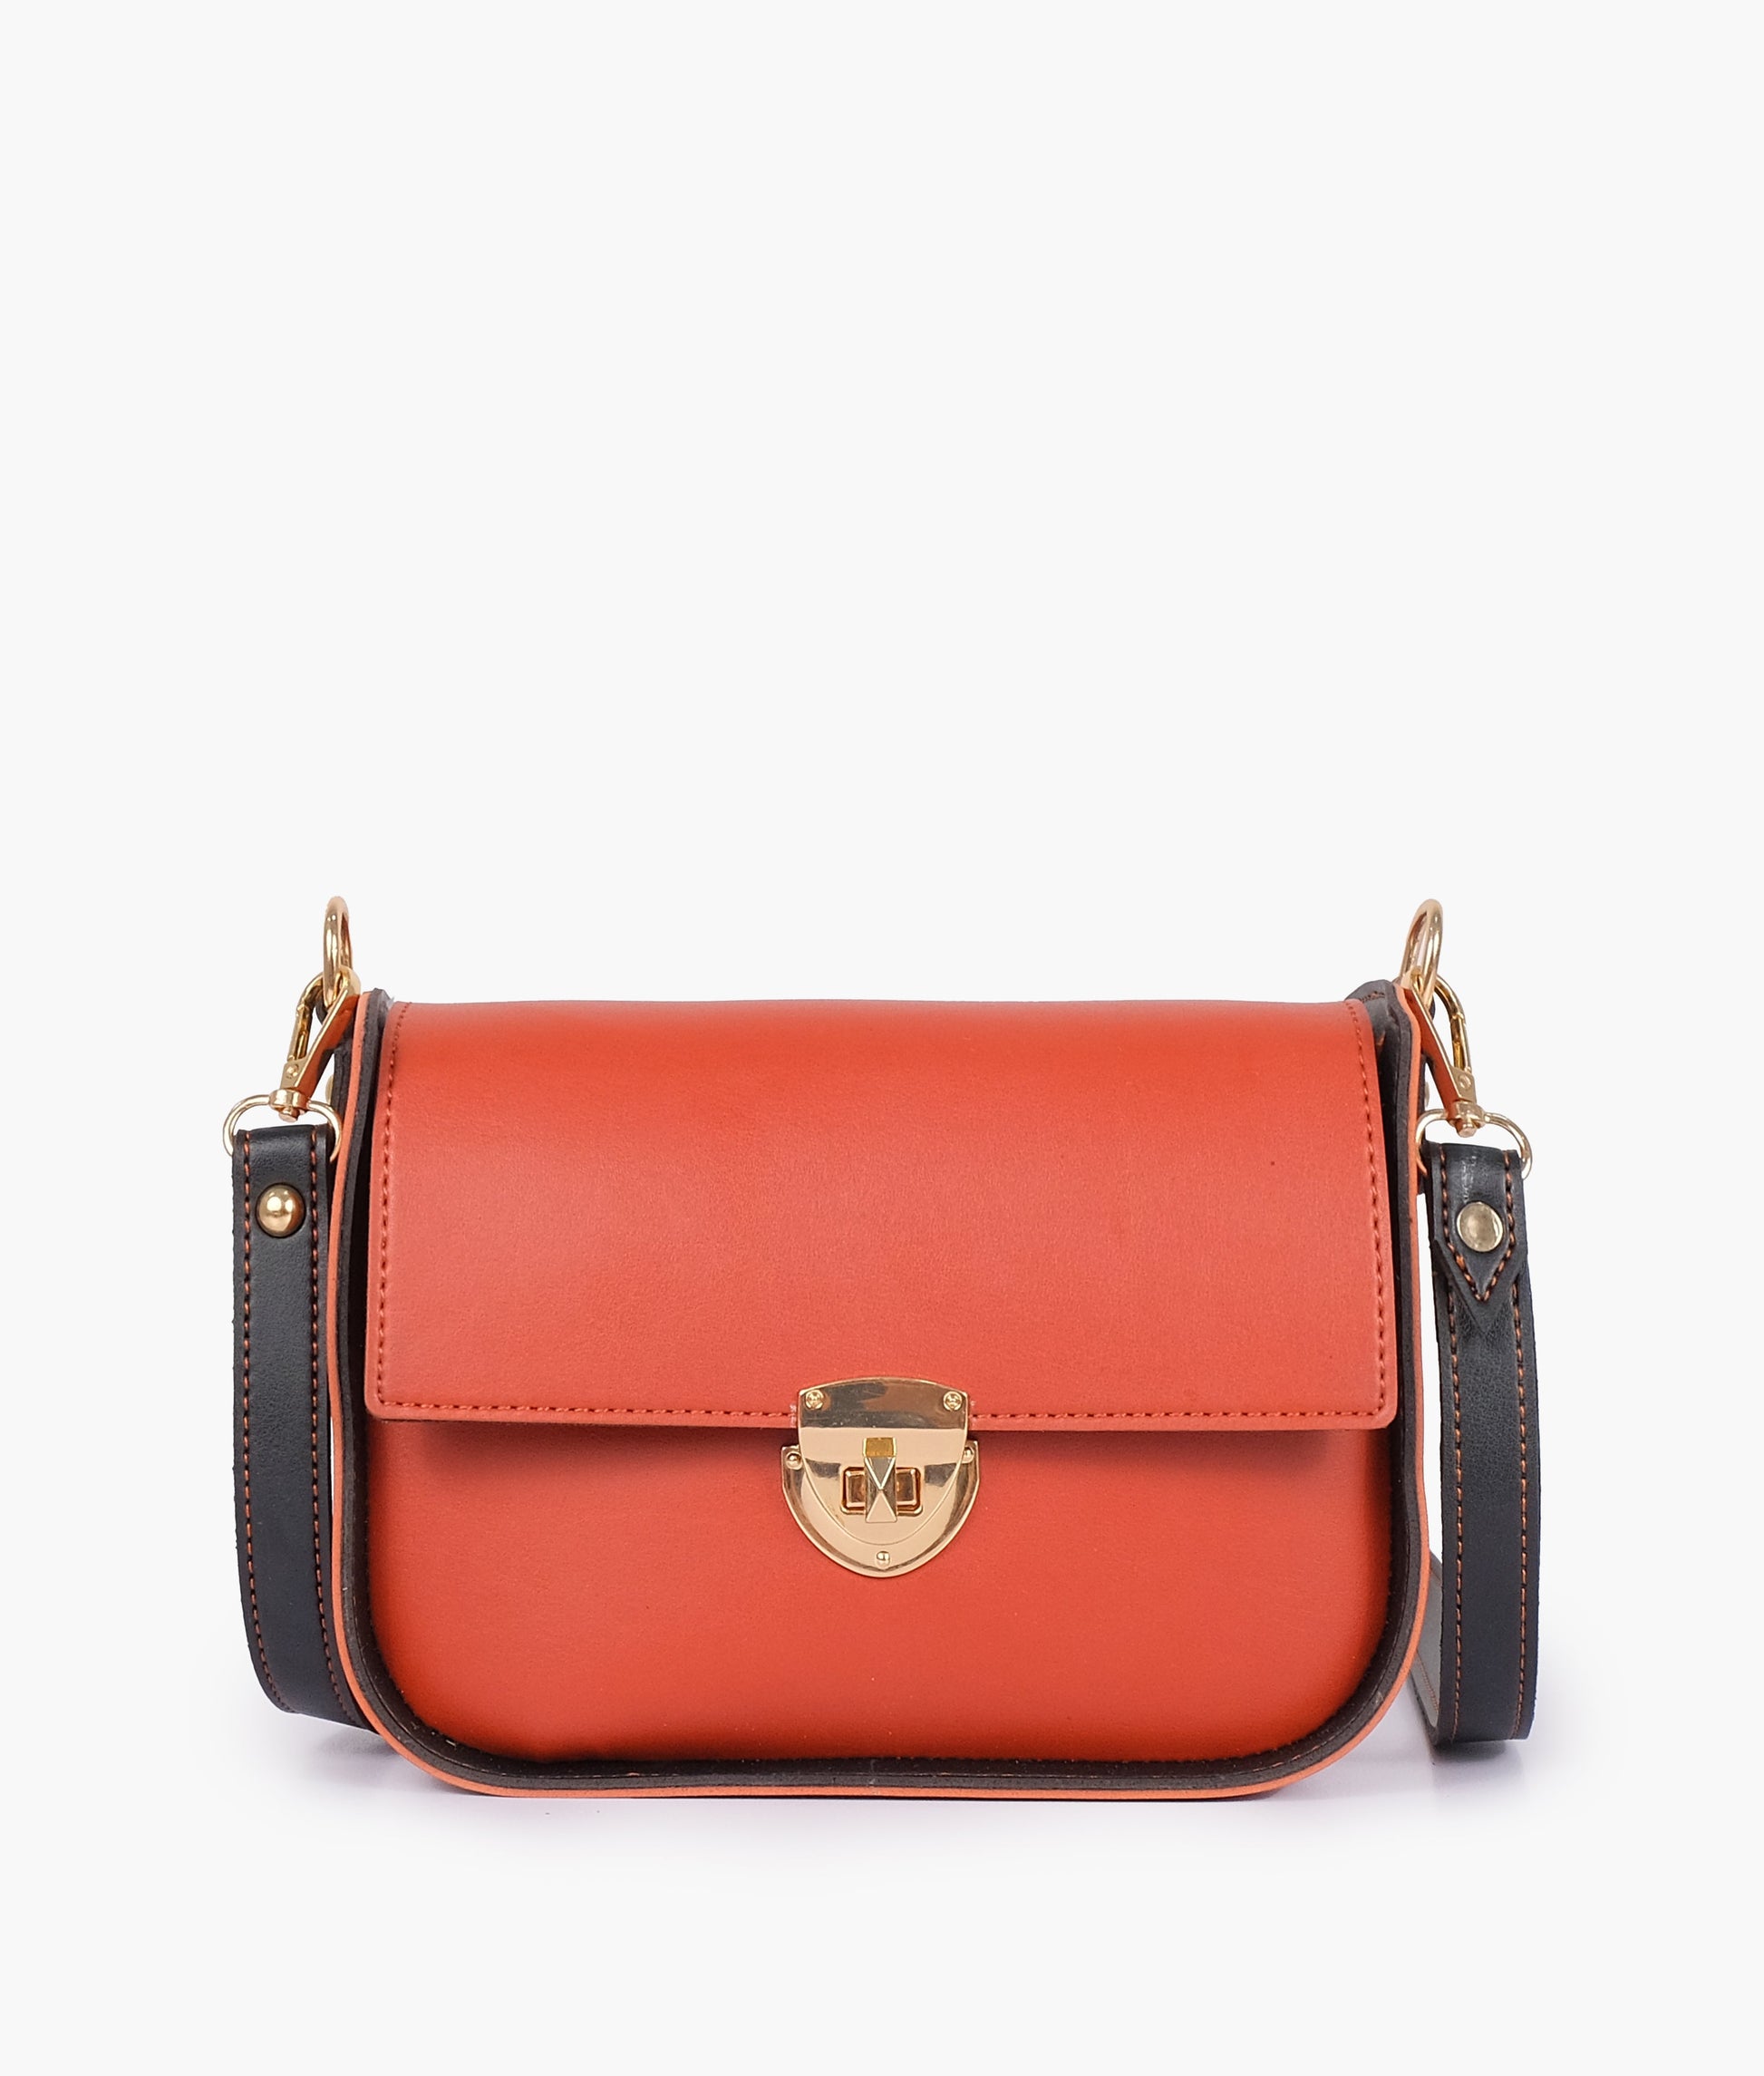 Red Handbag For Women 4191